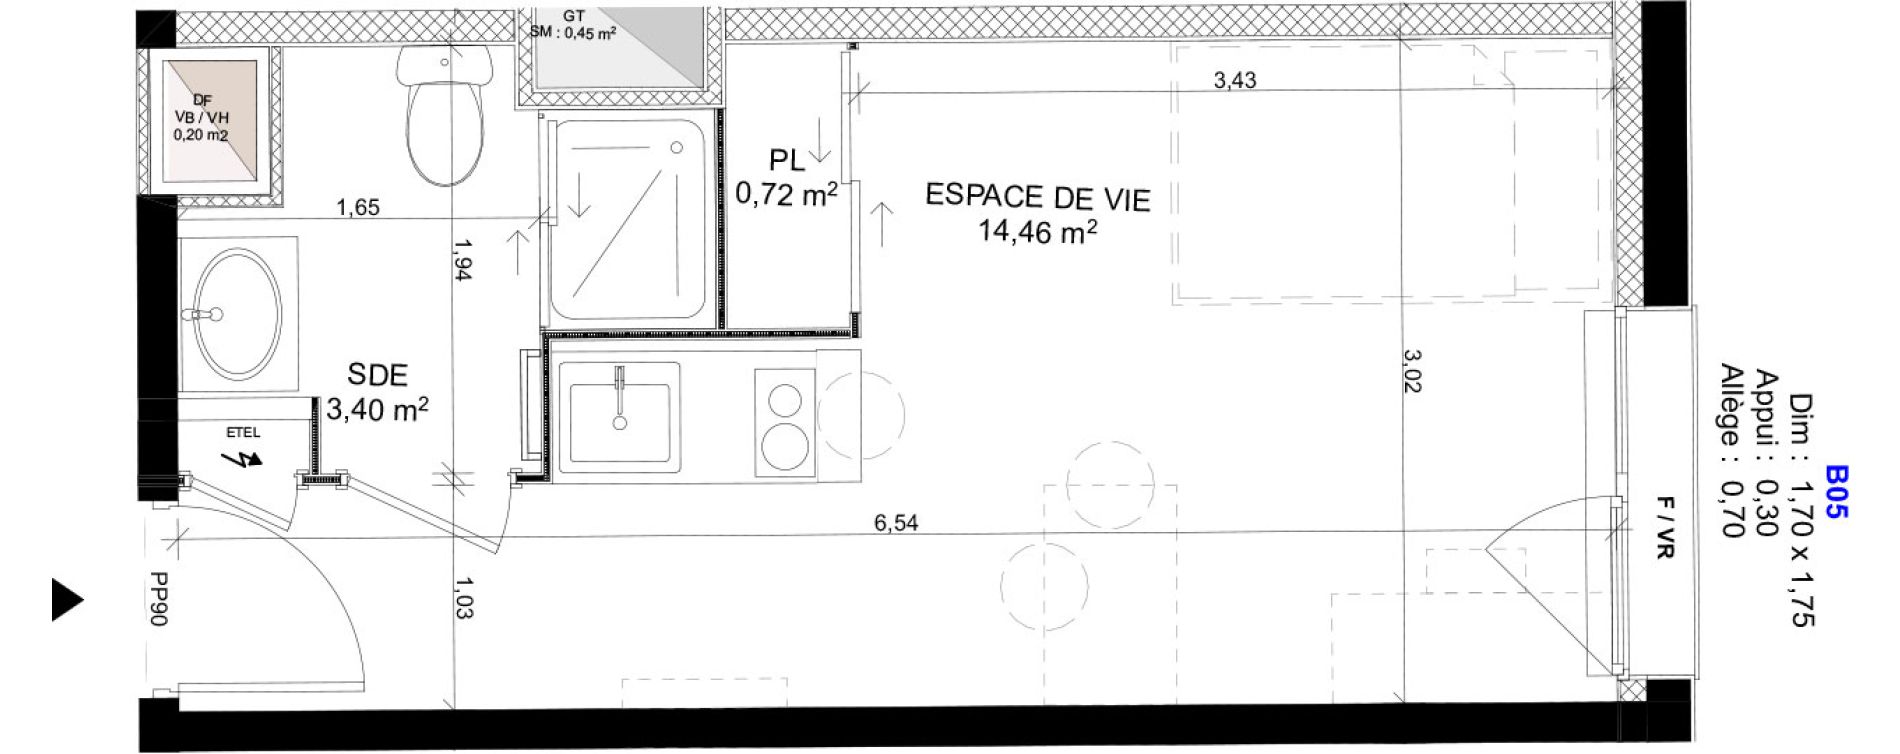 Appartement T1 meubl&eacute; de 18,58 m2 au Havre Sainte marie - saint leon